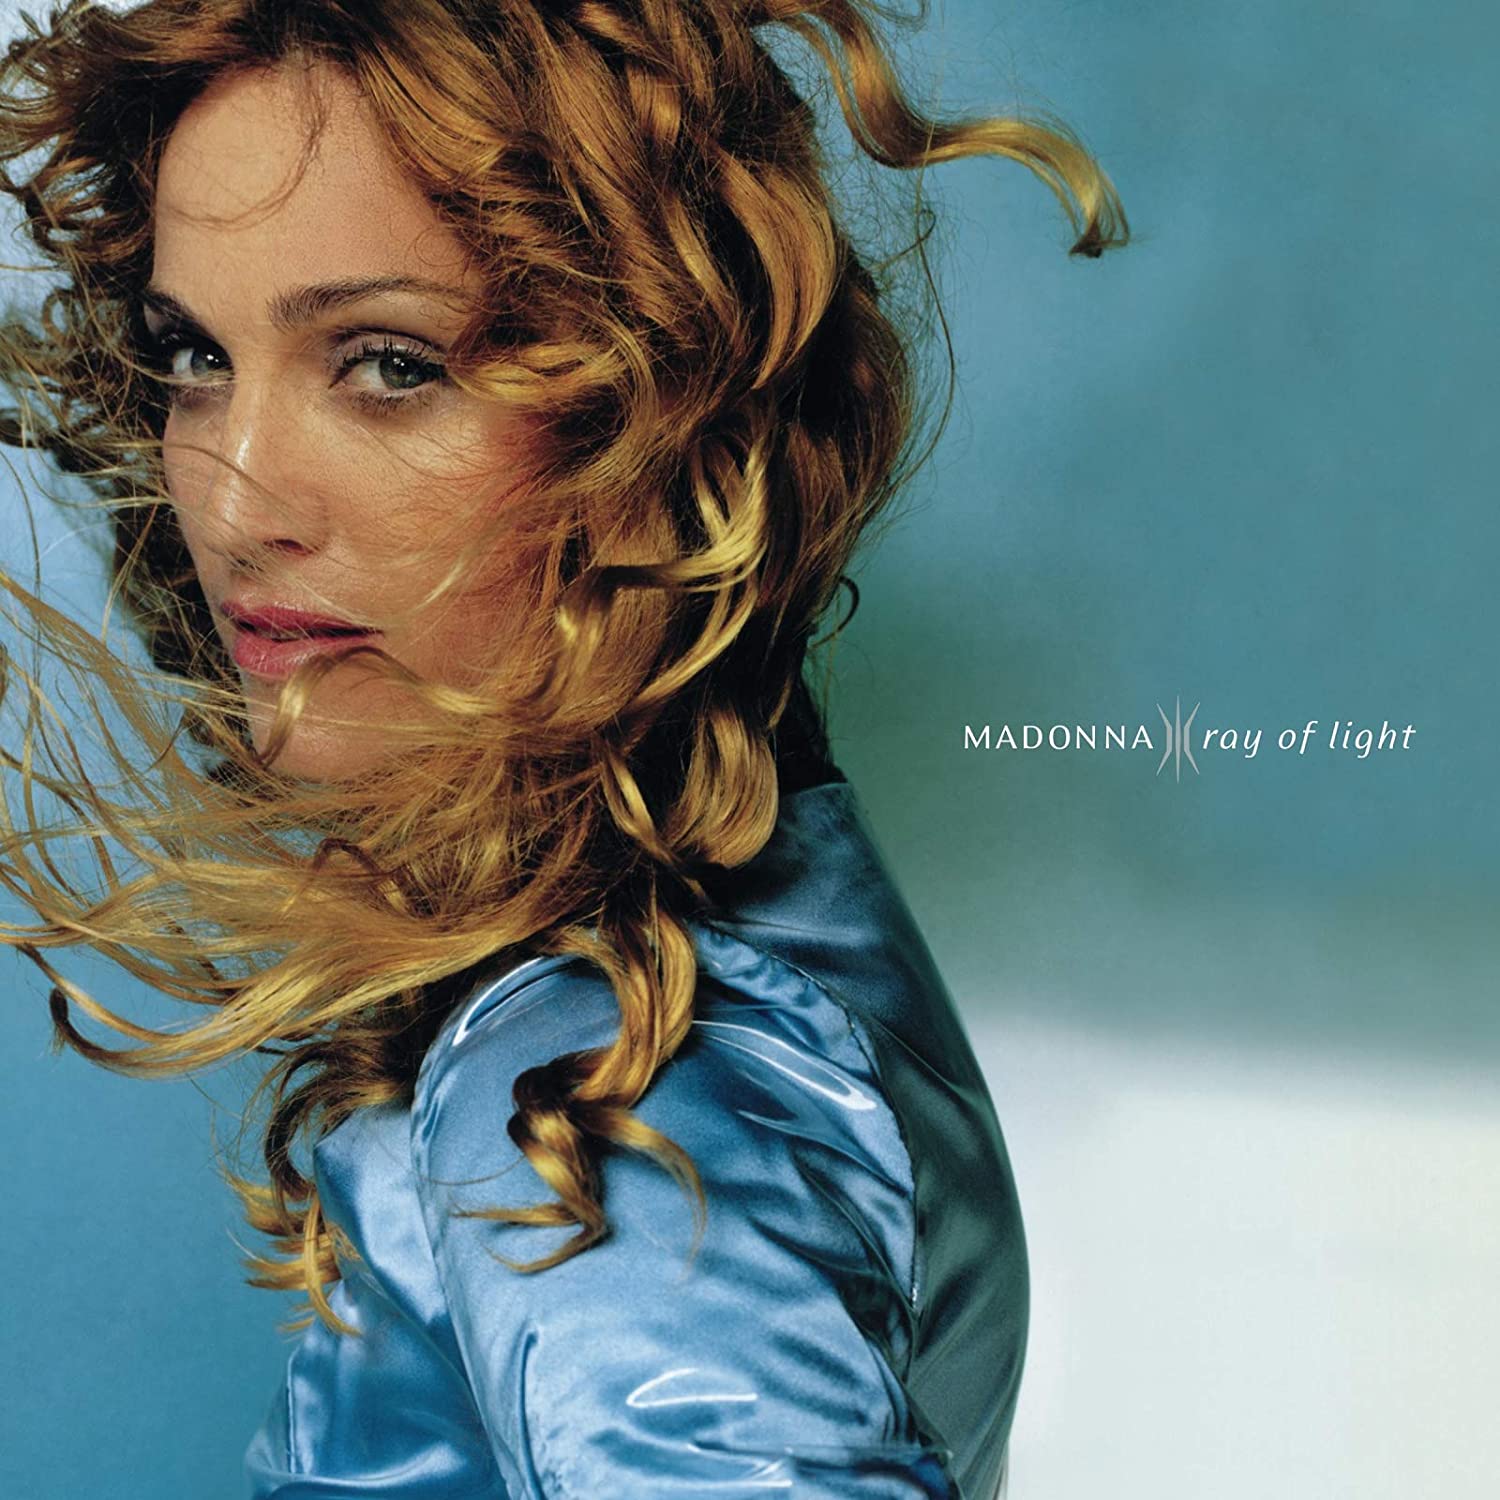 Madonna "Ray of light" LP